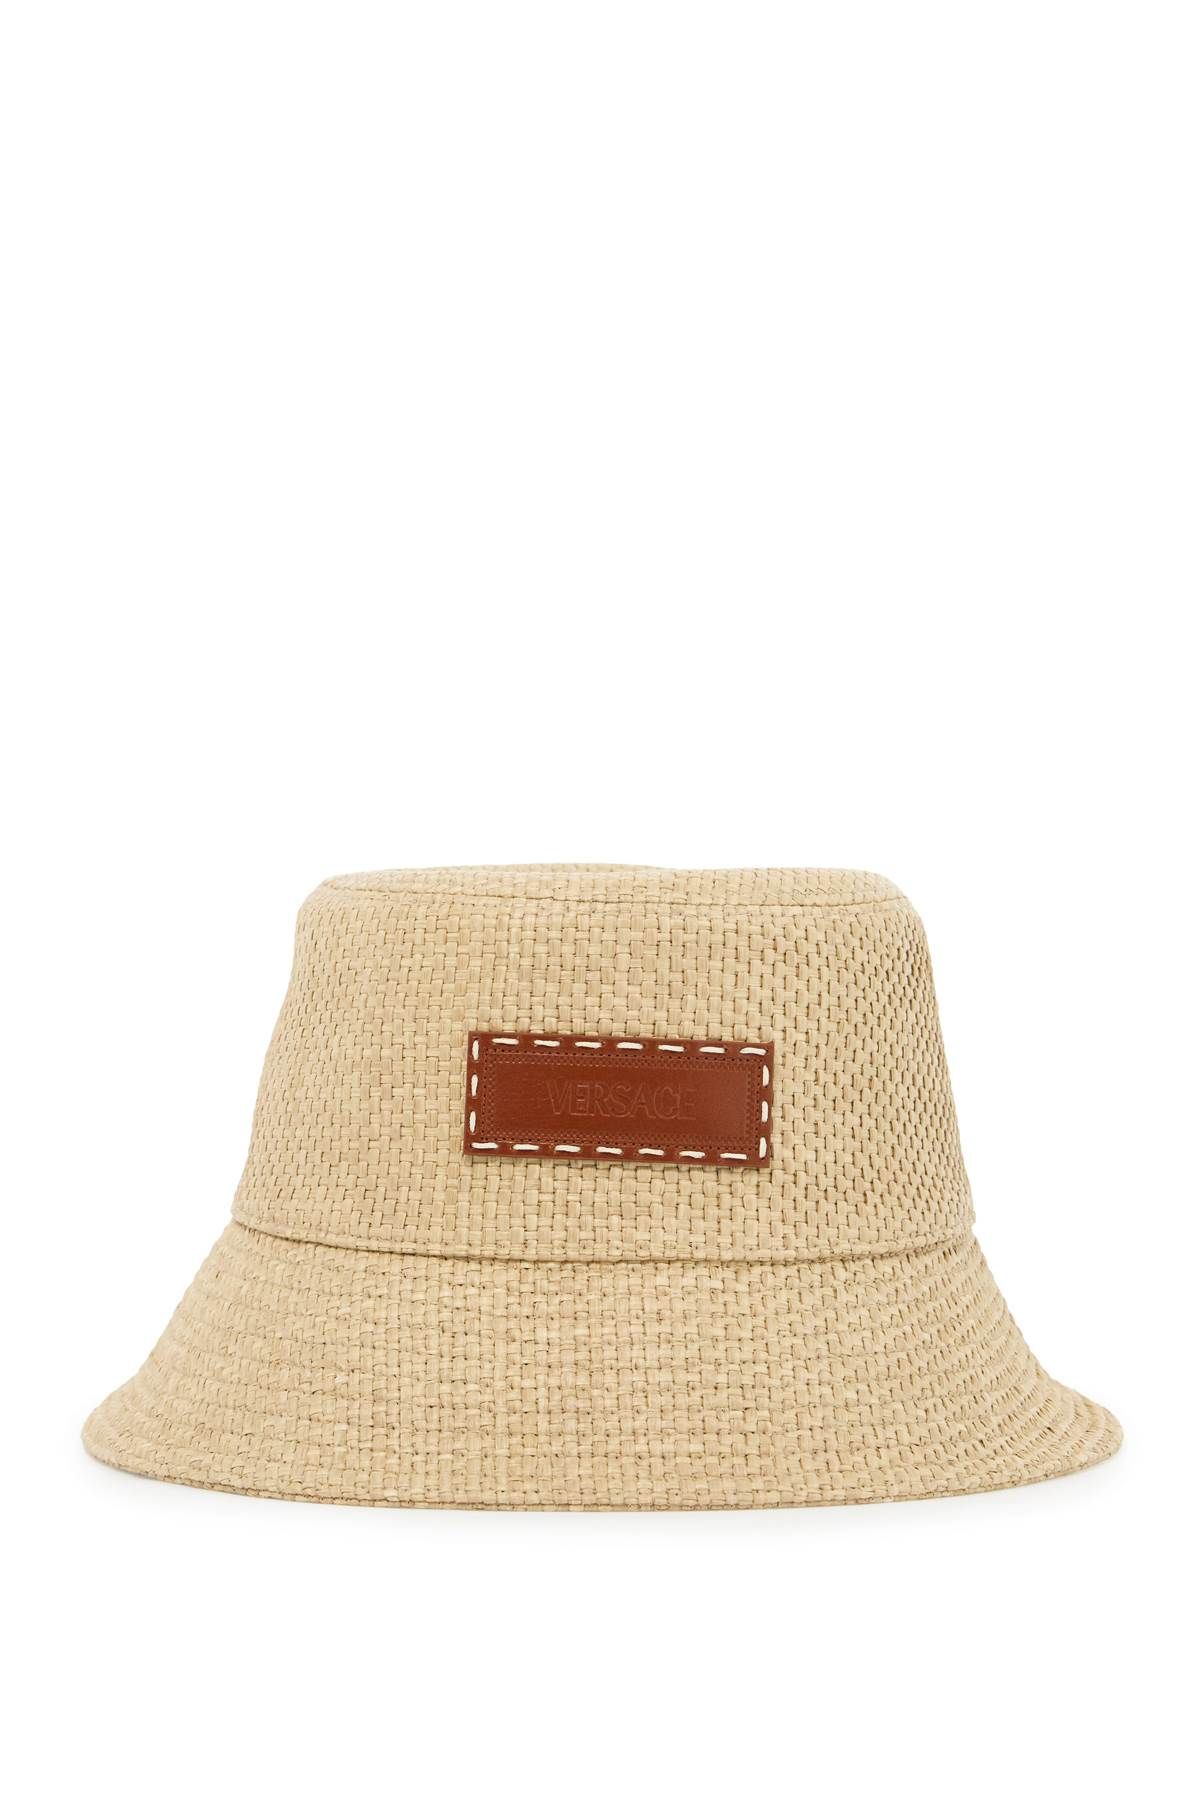 Versace VERSACE raffia bucket hat for